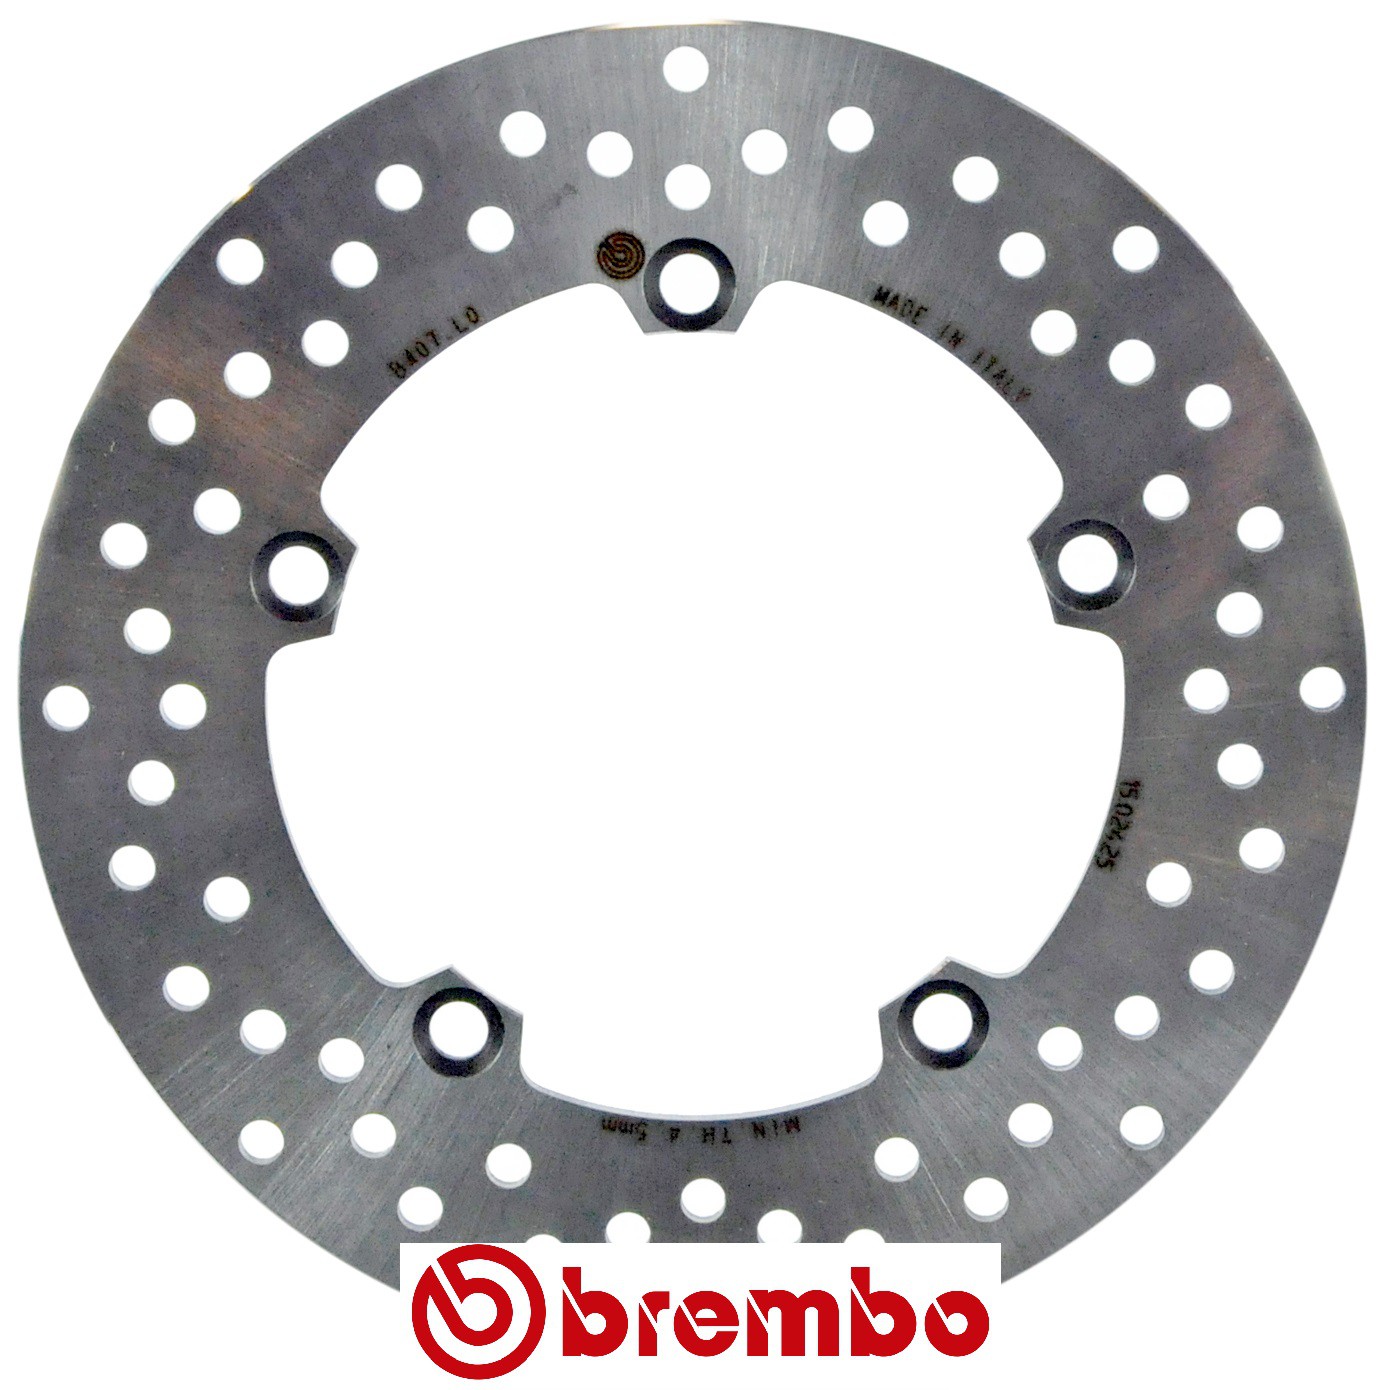 Disque de frein arrière Brembo pour Yamaha MT-07 (14-20)